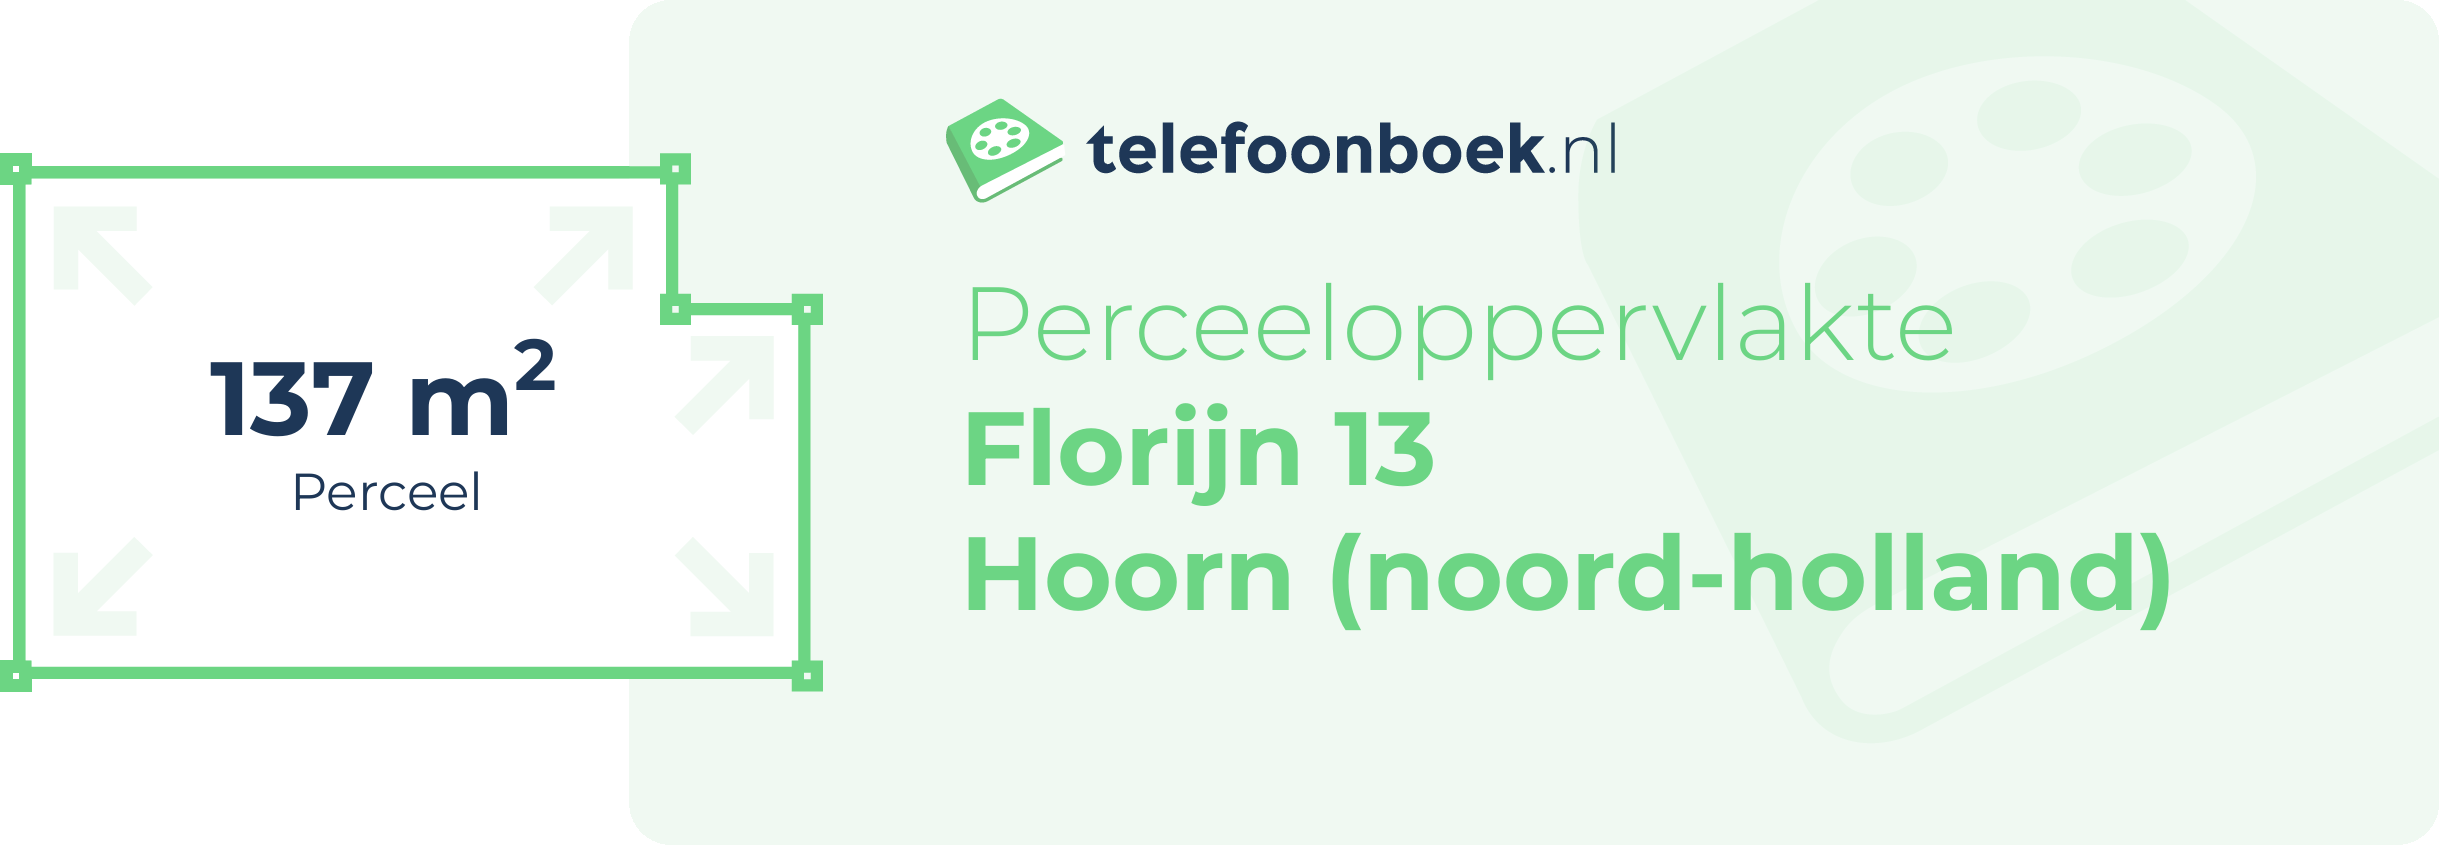 Perceeloppervlakte Florijn 13 Hoorn (Noord-Holland)